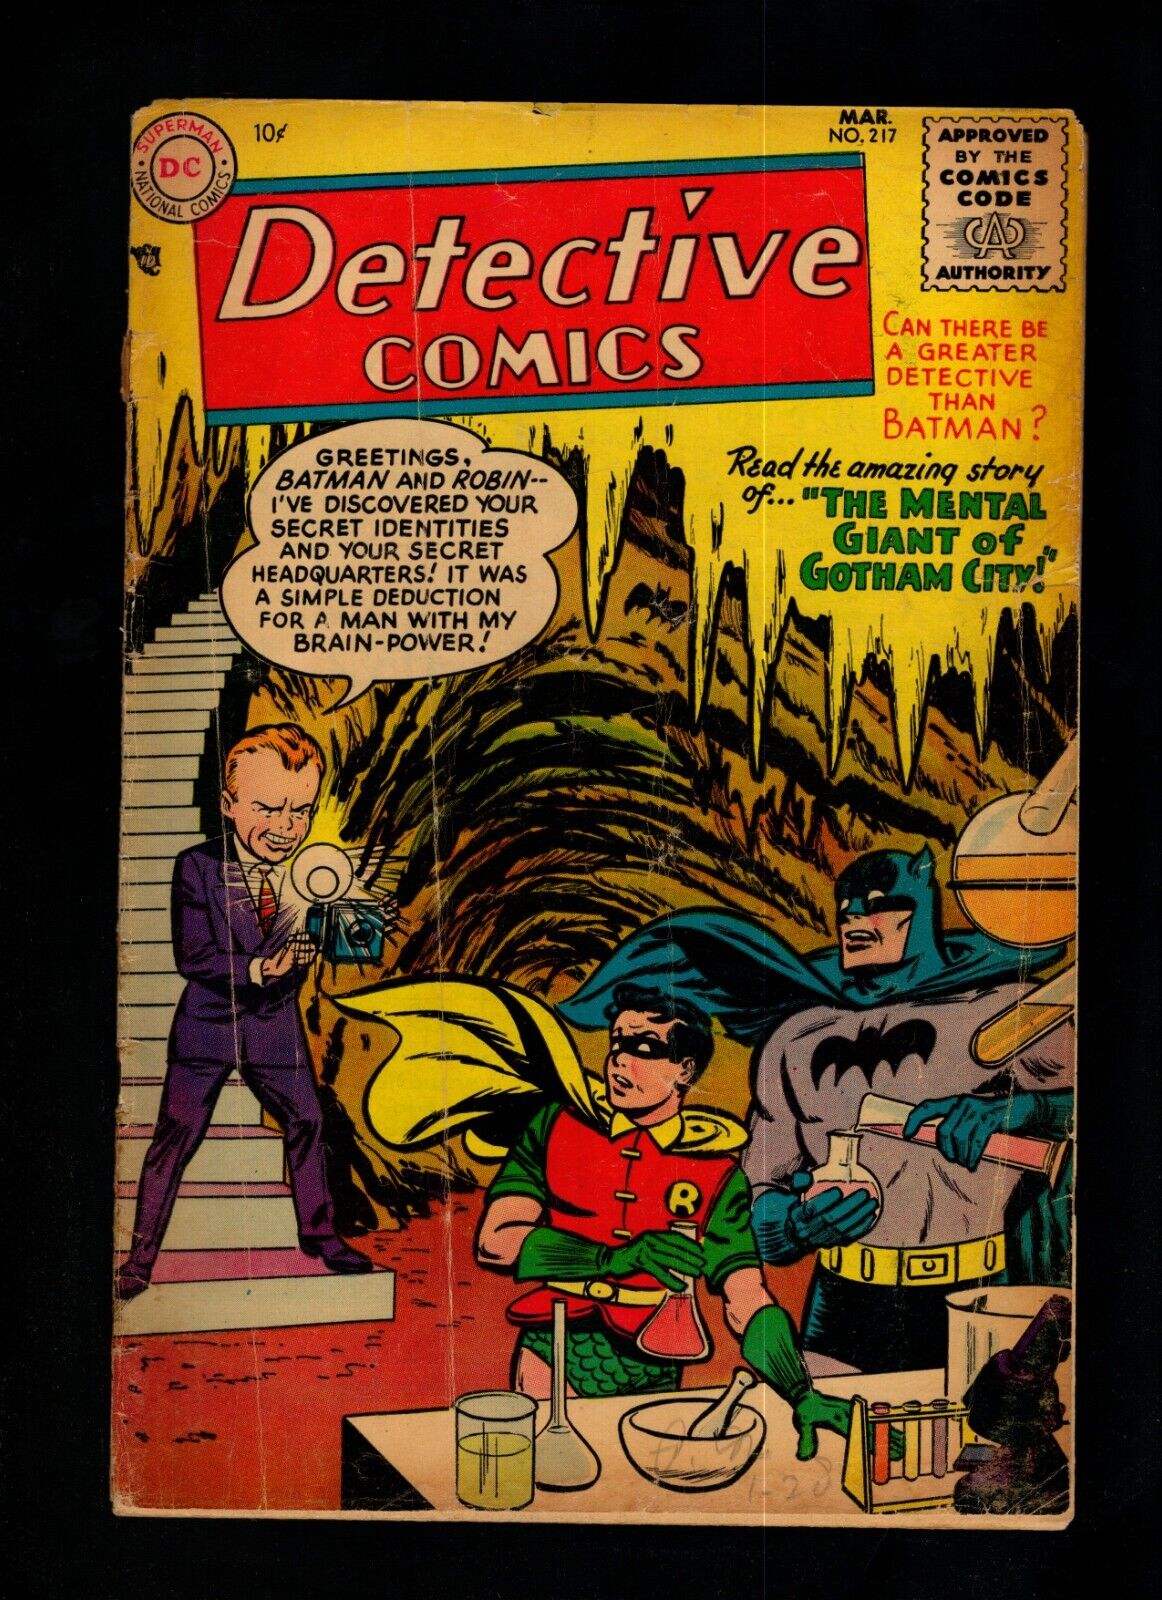 DETECTIVE COMICS #217, BATMAN VS MENTAL GIANT, DC GOLDEN AGE, 1955